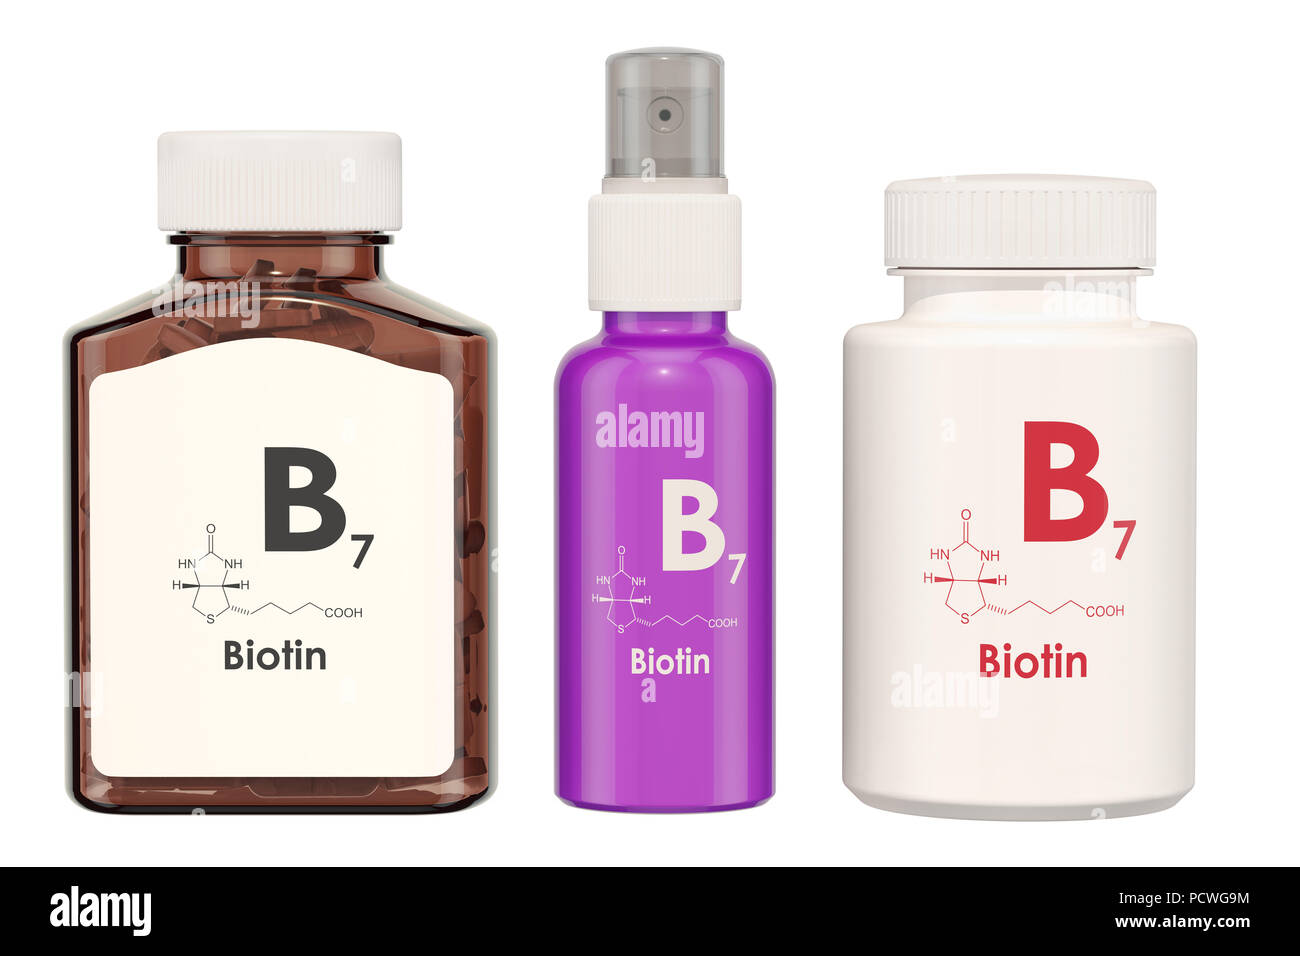 La vitamine B7, biotine. Bouteilles médicales avec des comprimés et bouteille de jet, rendu 3D isolé sur fond blanc Banque D'Images